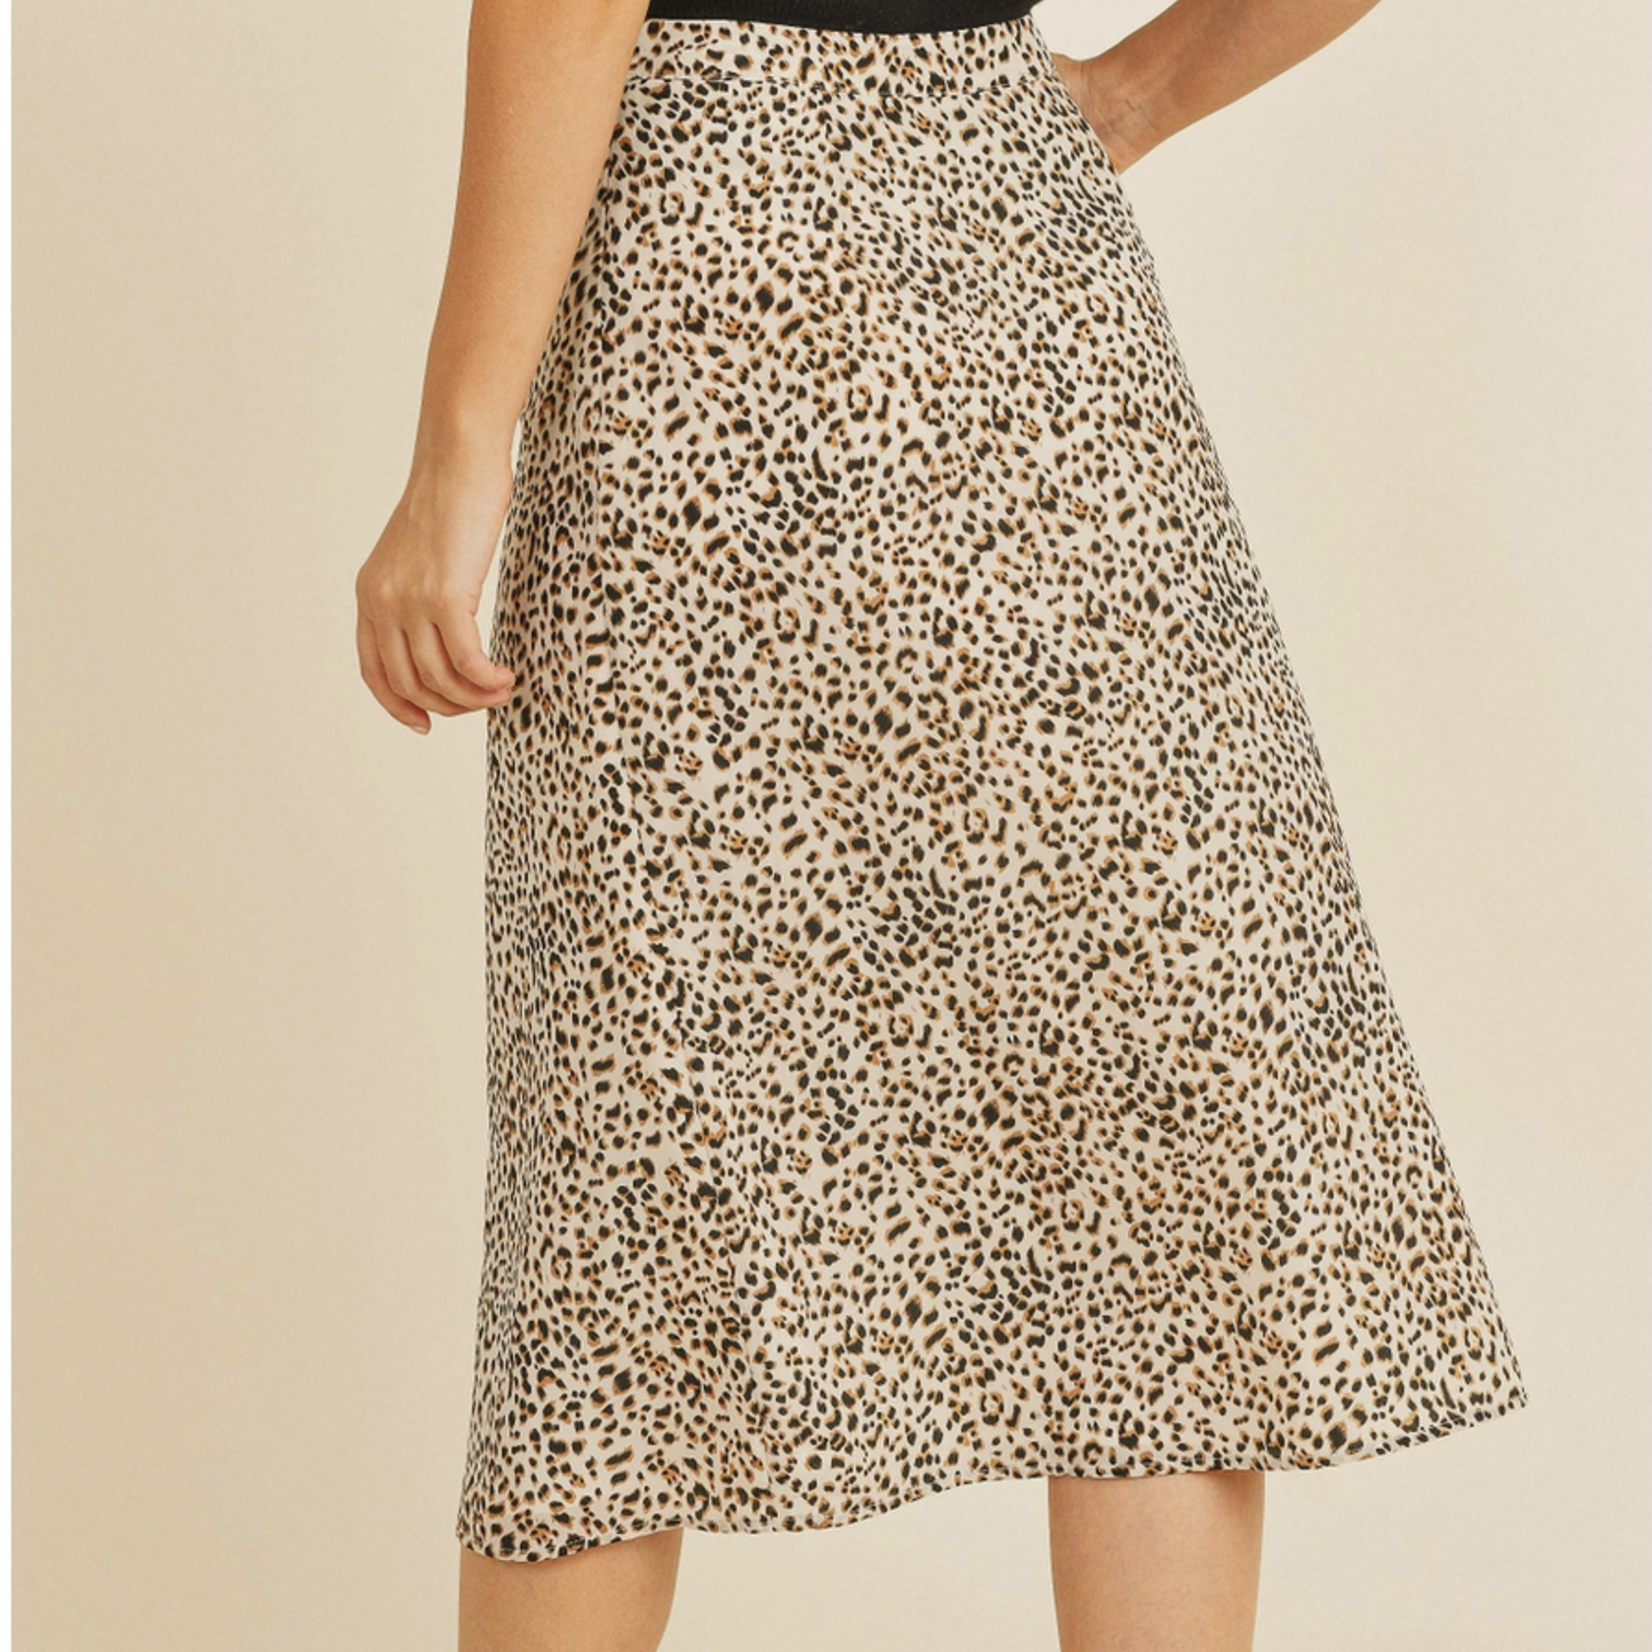 Follow Along Leopard Print Skirt